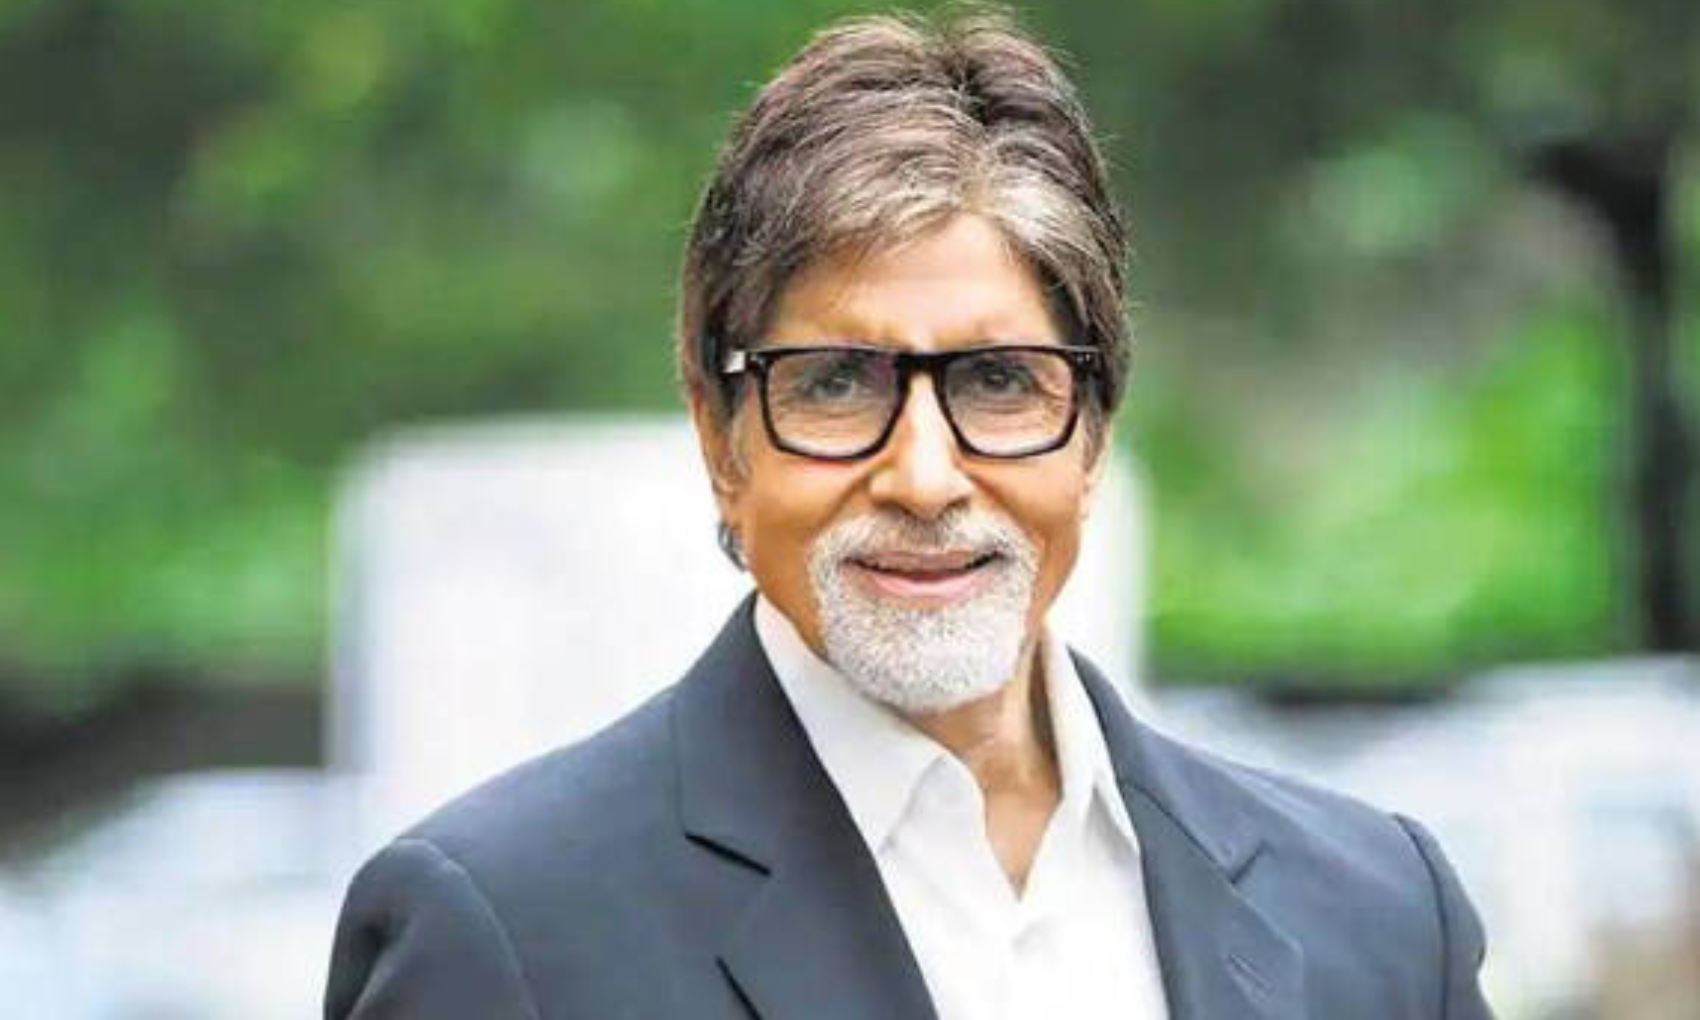 अमिताभ बच्चन ने शेयर की अपनी ब्लैक एंड वाइट तस्वीर, कैप्शन में लिखा- ‘कोई कोरोना आइसोलेशन में..